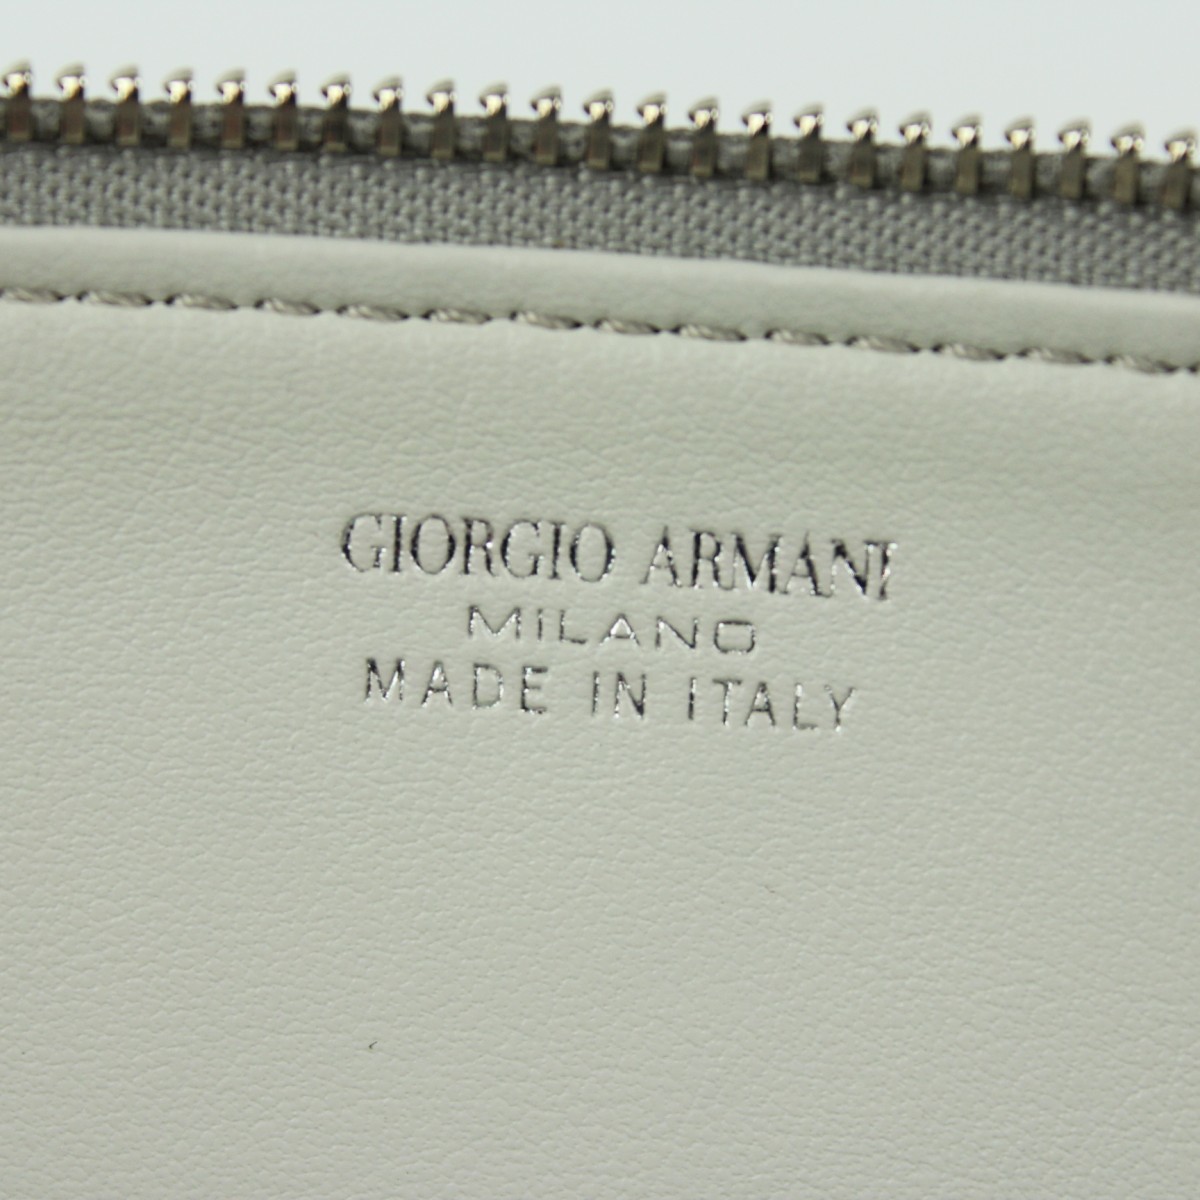 GIORGIO ARMANI ジョルジオ アルマーニ イタリア製 レザー フラットケース 小物入れ ポーチ ミニバッグ_画像6